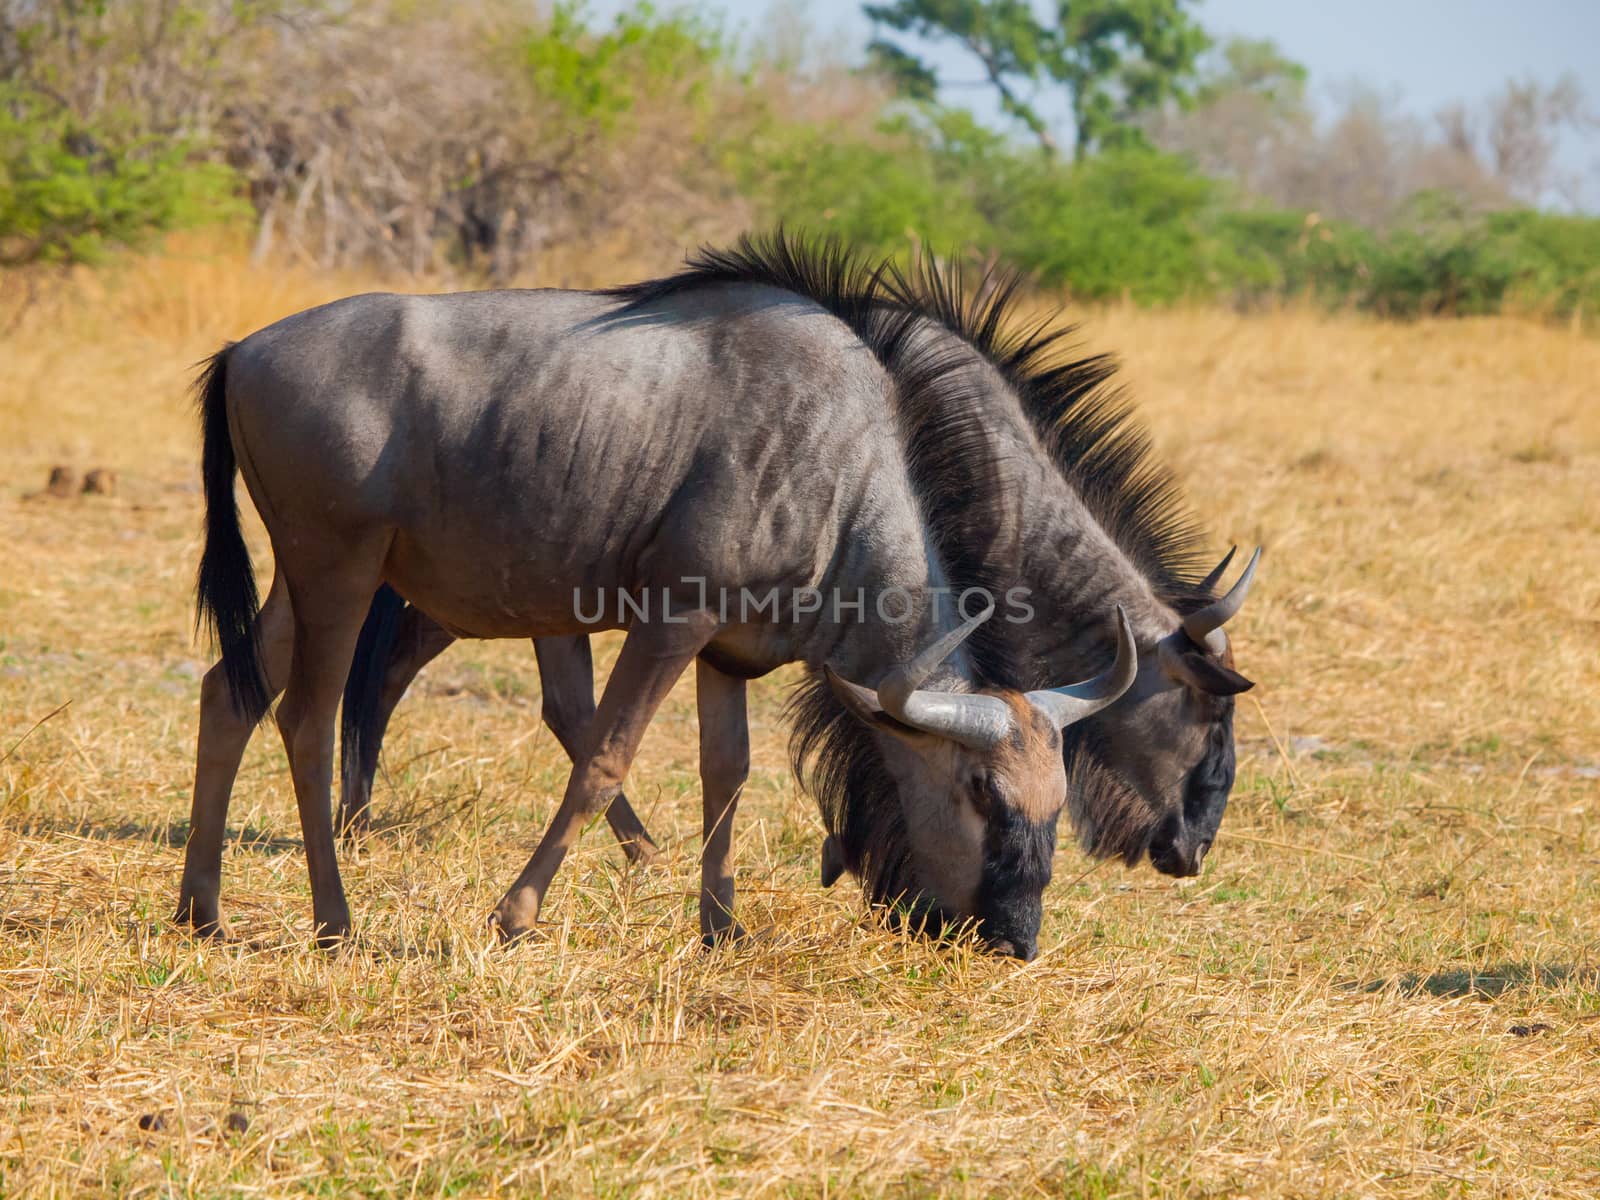 Blue wildebeest in savanna (Connochaetes taurinus)